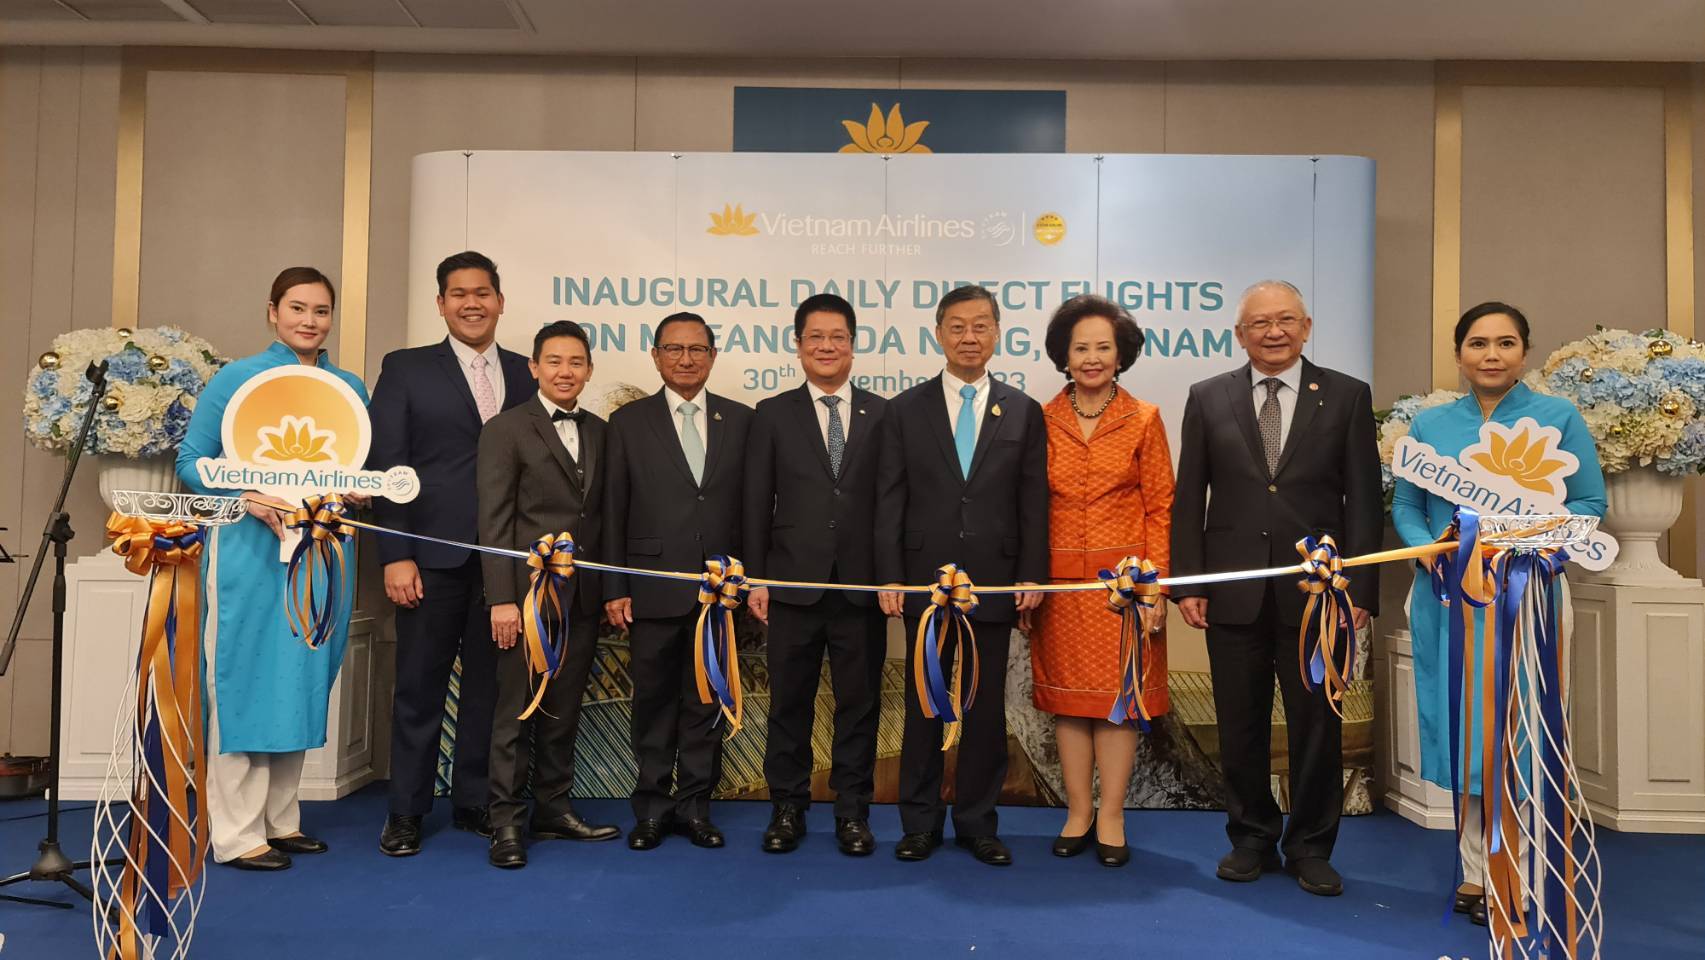 คณะกรรมการบริหารกลุ่มมิตรภาพฯ ไทย-เวียดนาม แสดงความยินดีกับสายการบินเวียดนามแอร์ไลน์ในการเปิดเส้นทางการบิน ดานัง-ดอนเมือง